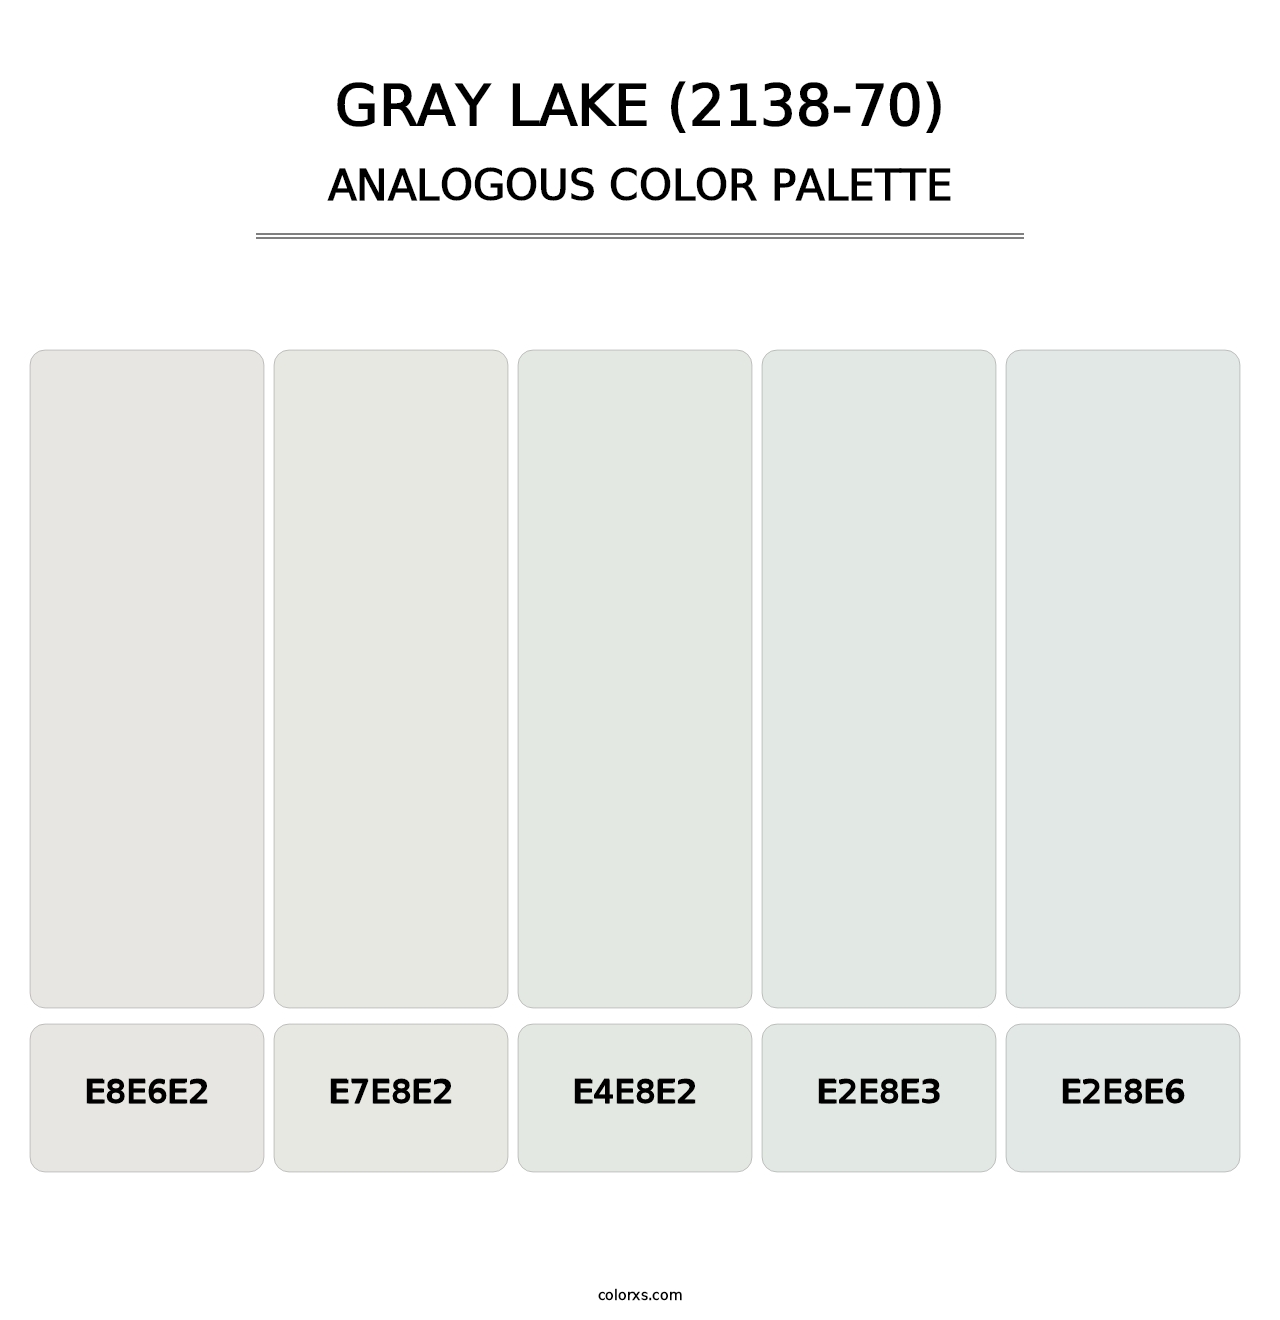 Gray Lake (2138-70) - Analogous Color Palette